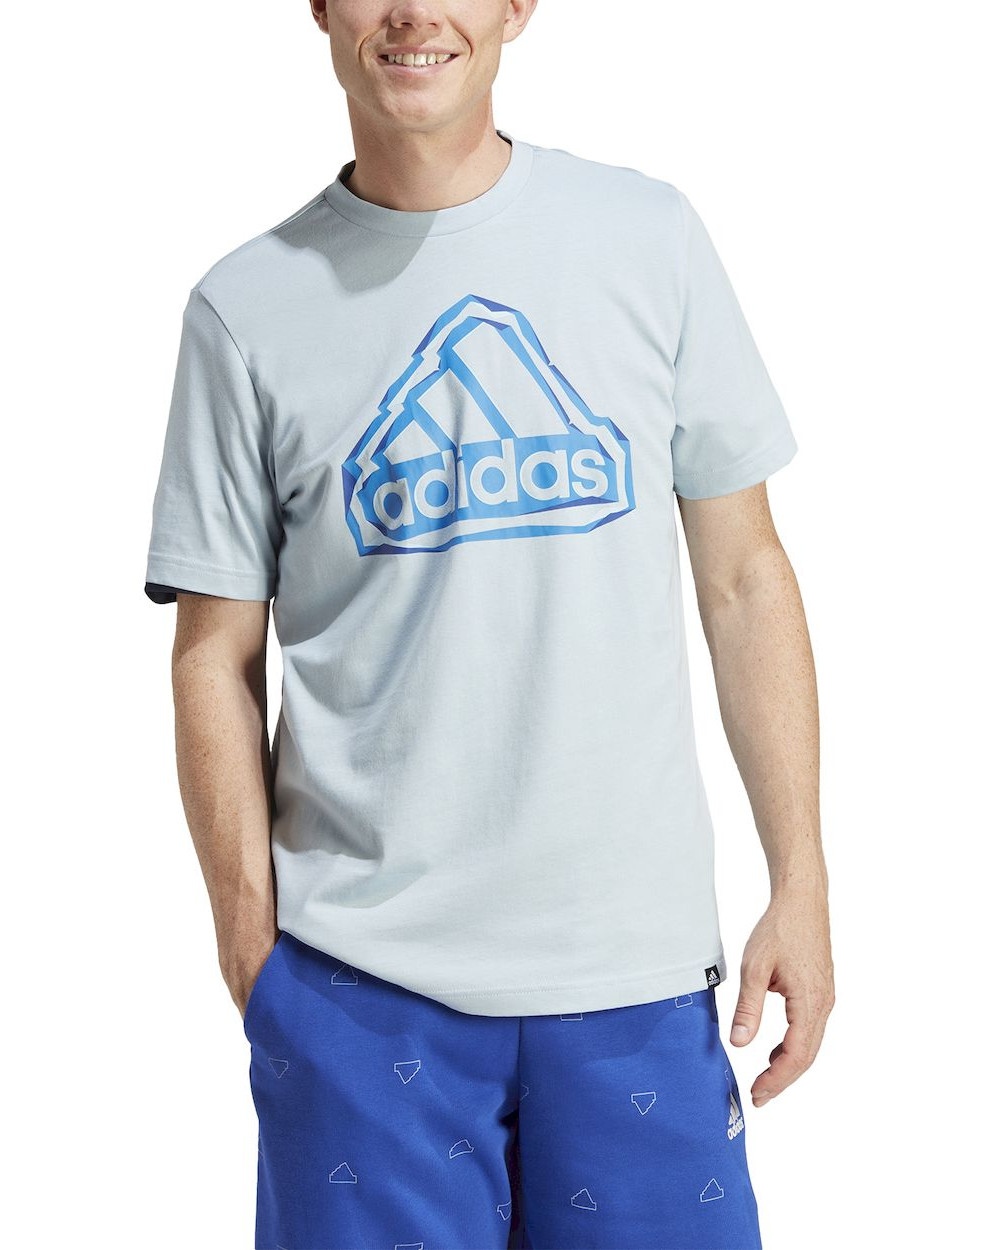  T-shirt maglia maglietta UOMO Adidas Azzurro Folden Badge Cotone jersey